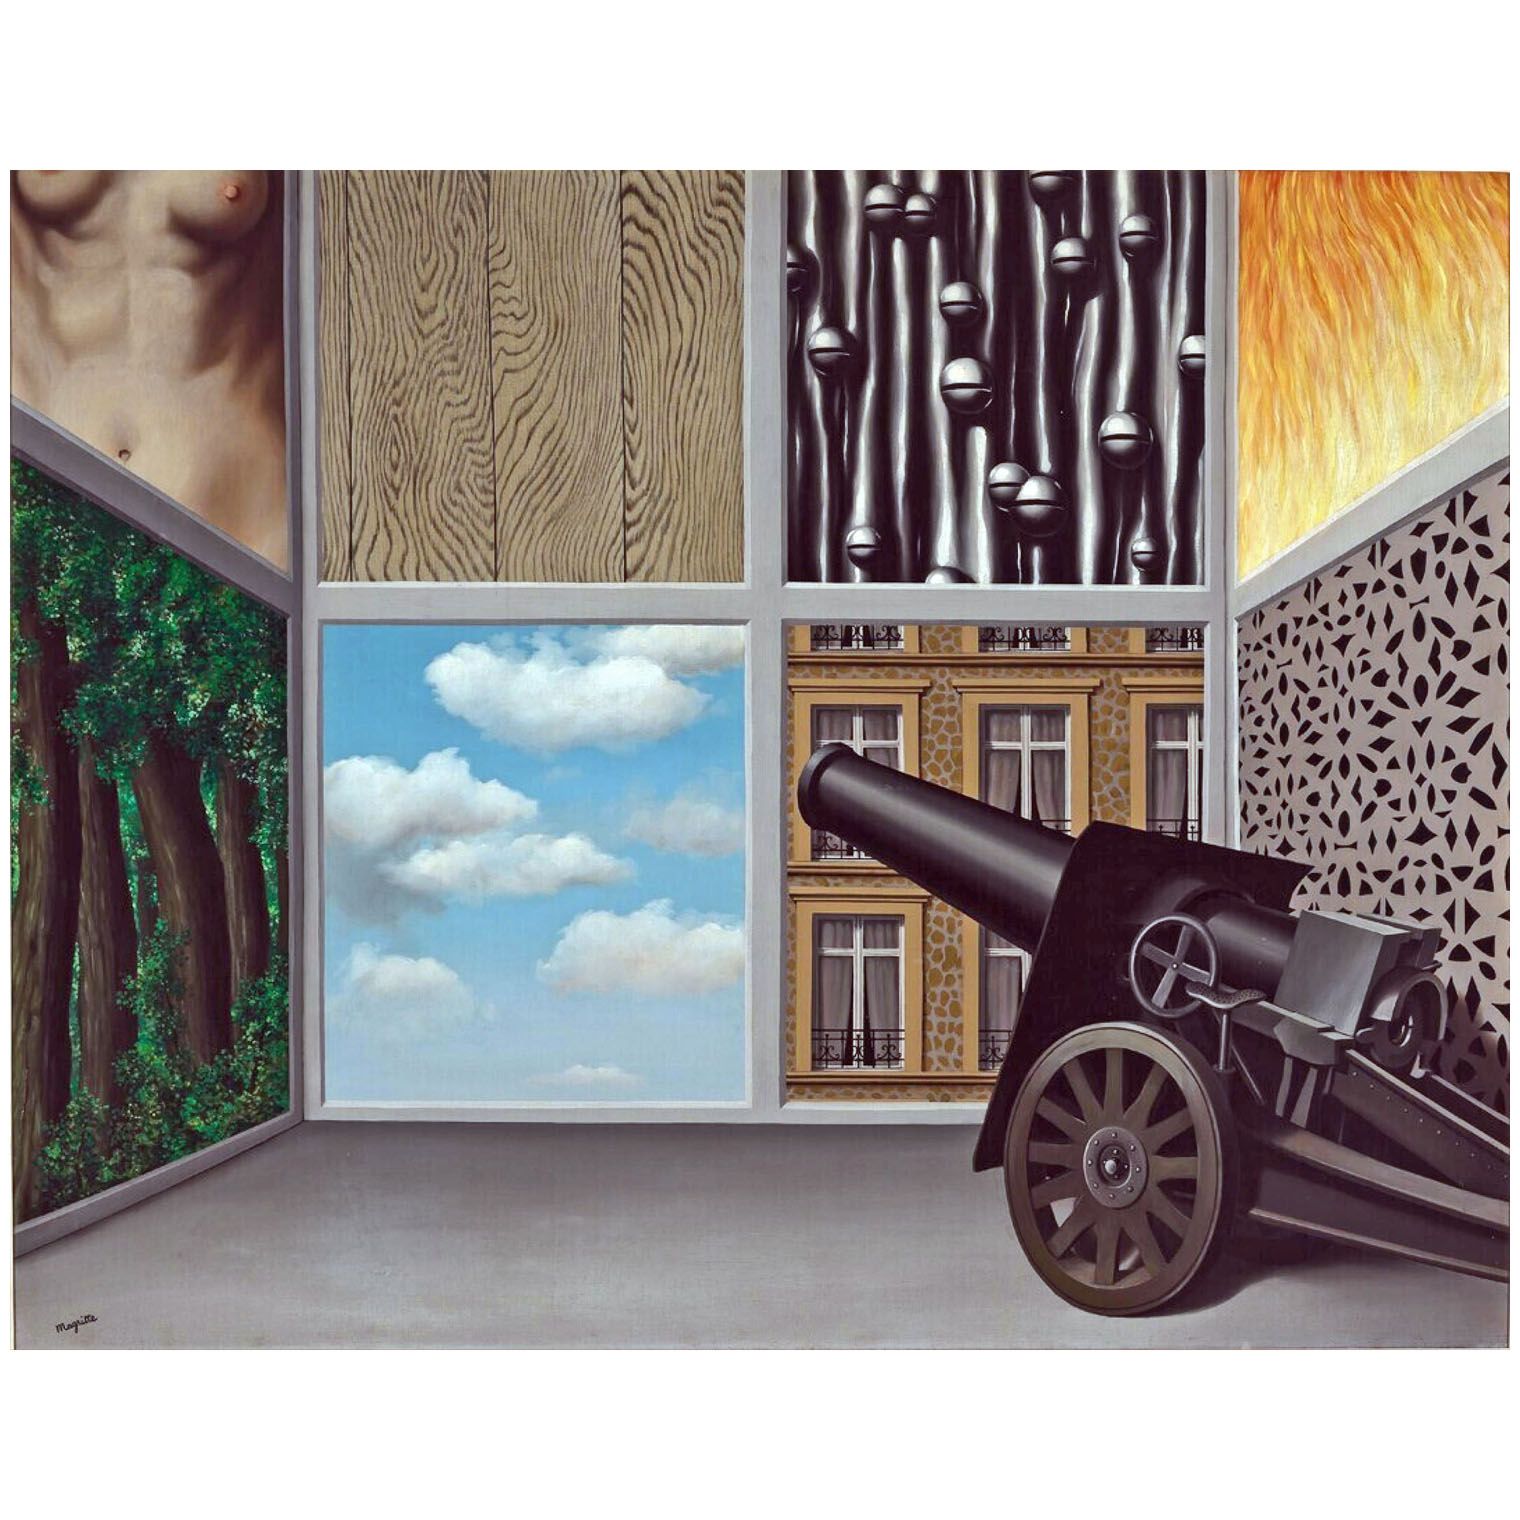 Rene Magritte. Au seuil de la liberté. 1930. Boijmans Van Beuningen, Rotterdam